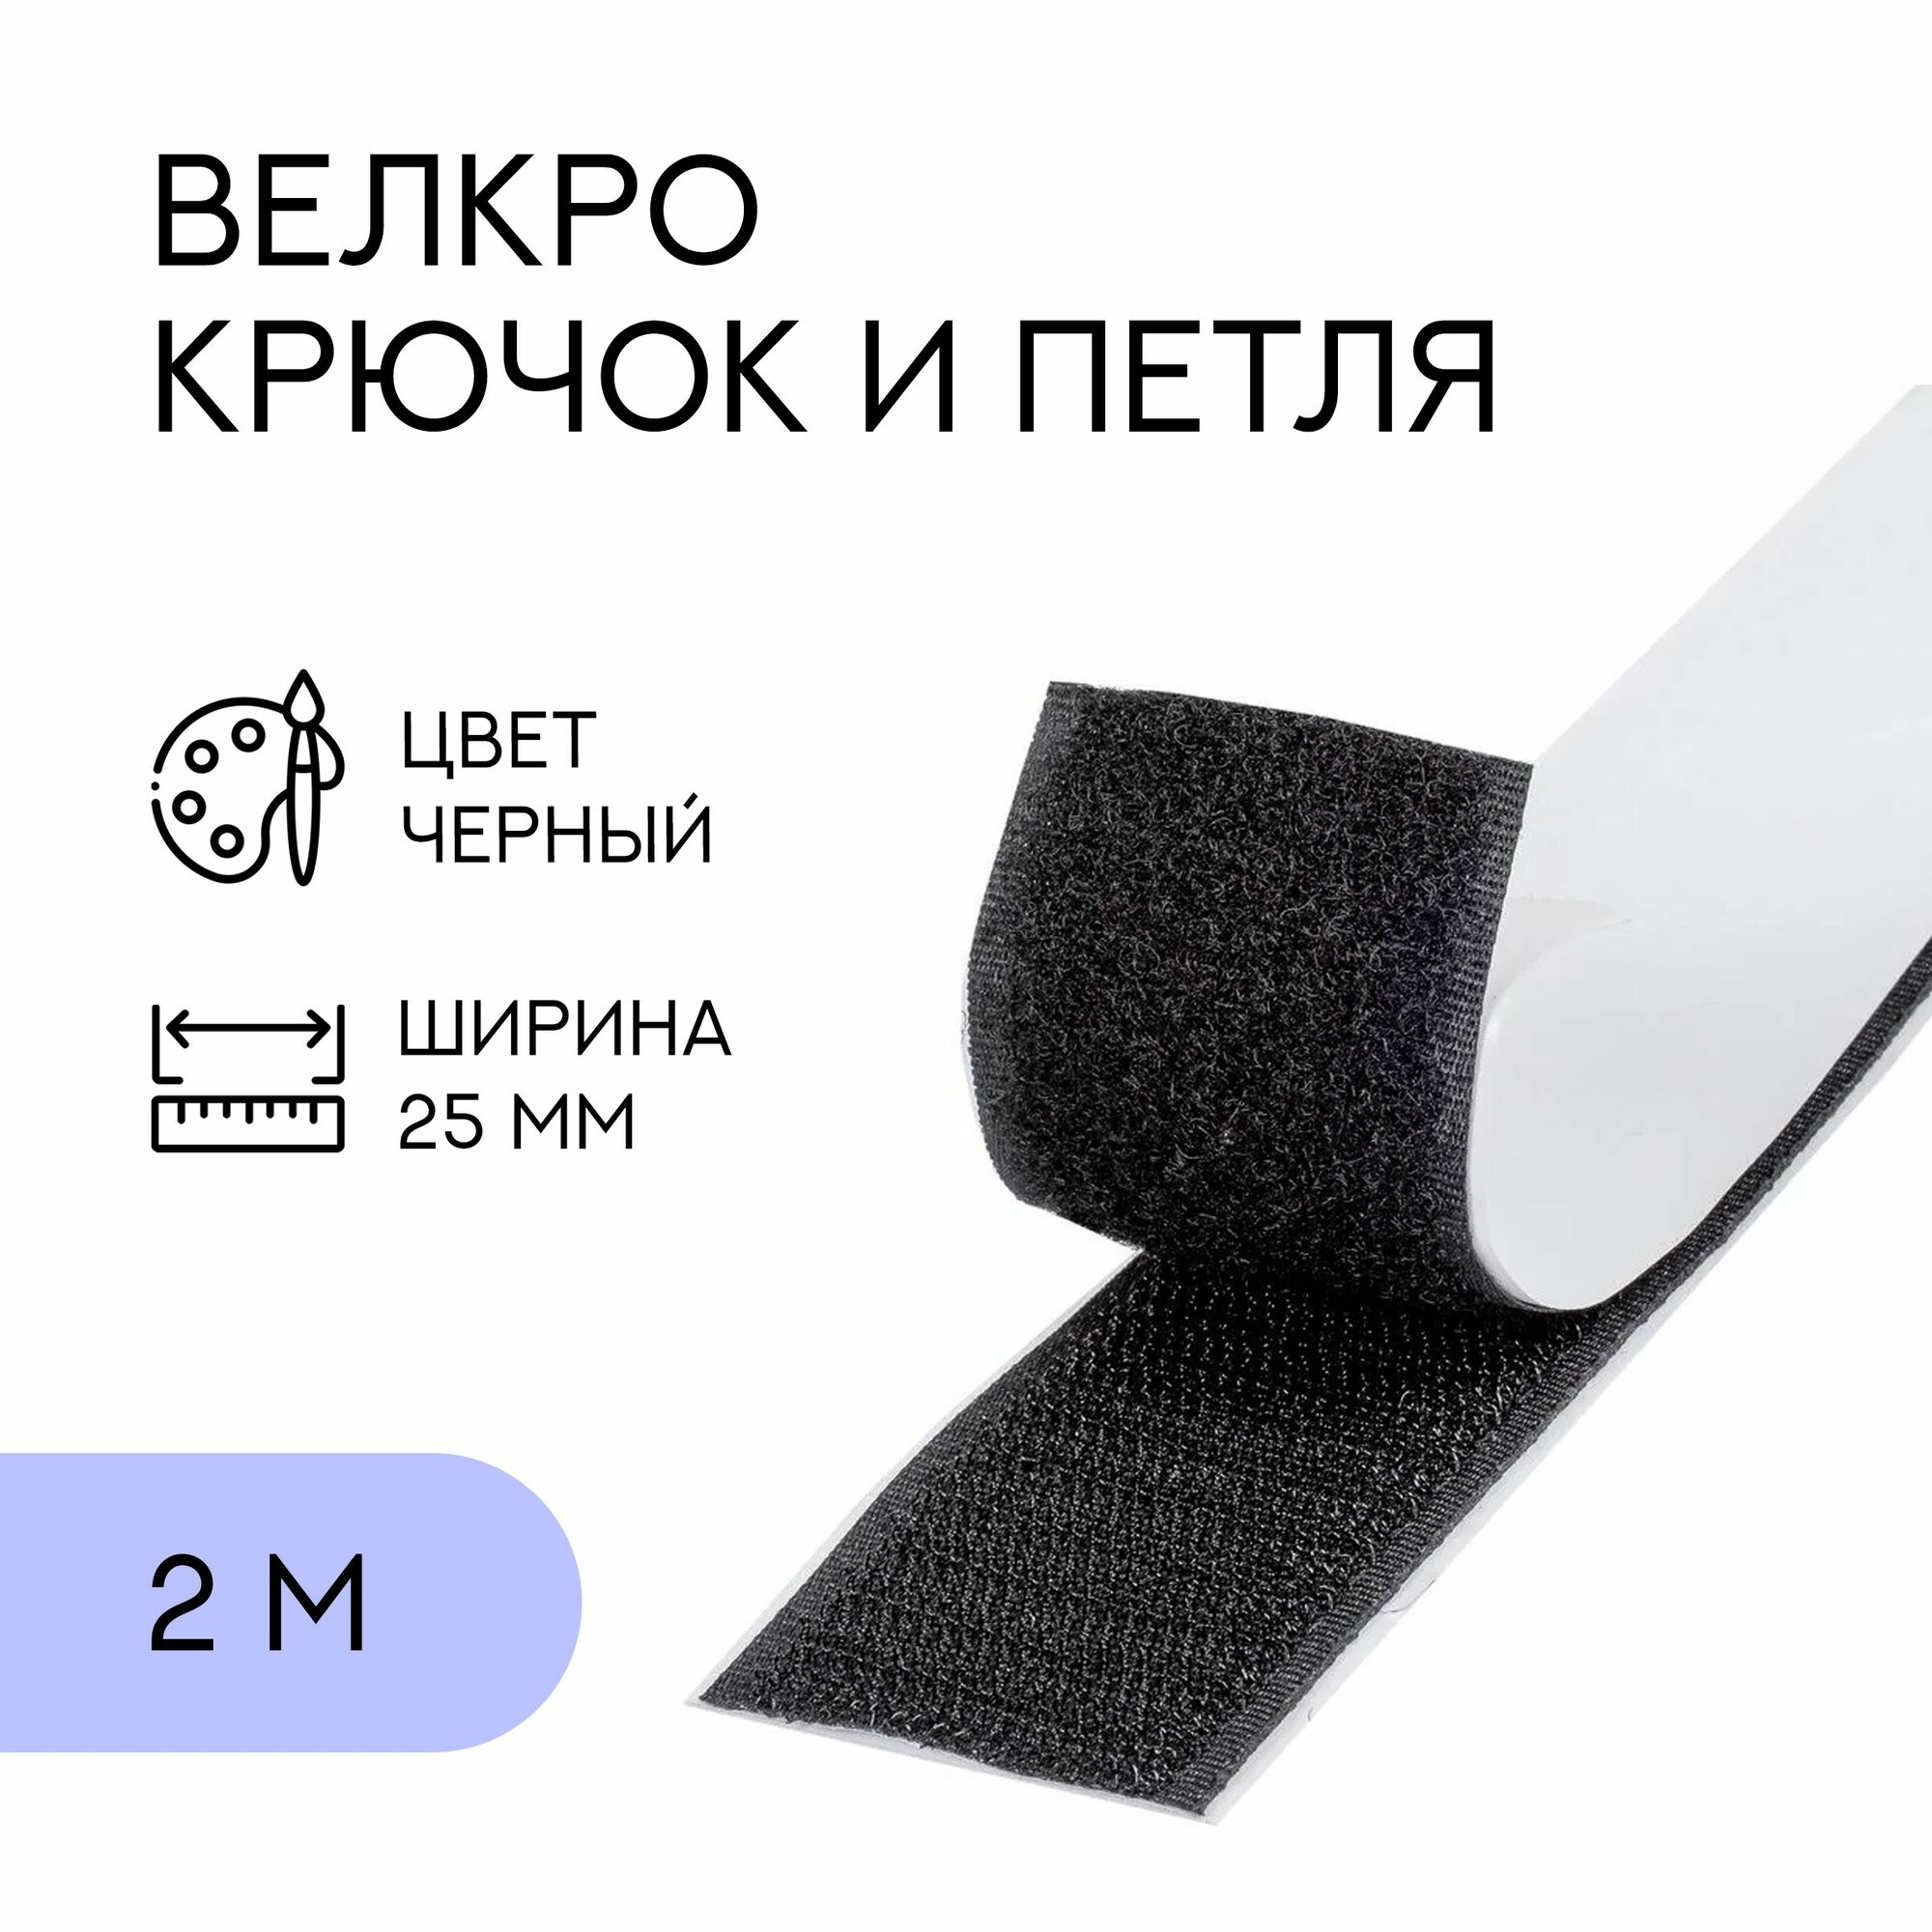 Велкро комплект (петля и крючок) с липким слоем / лента контактная липучка, 25 мм, черный, 2 м